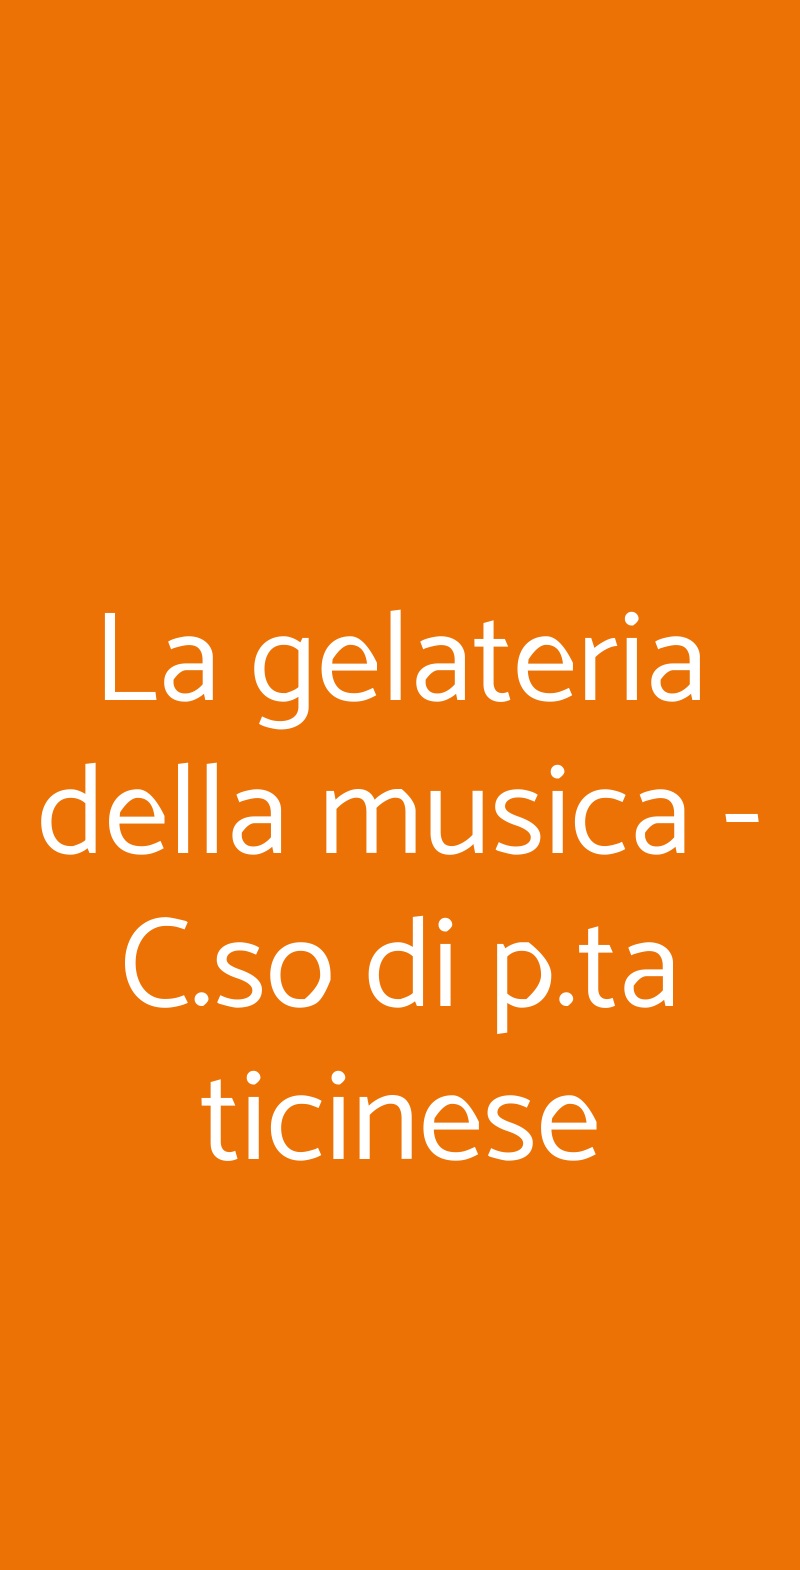 La gelateria della musica - C.so di p.ta ticinese Milano menù 1 pagina